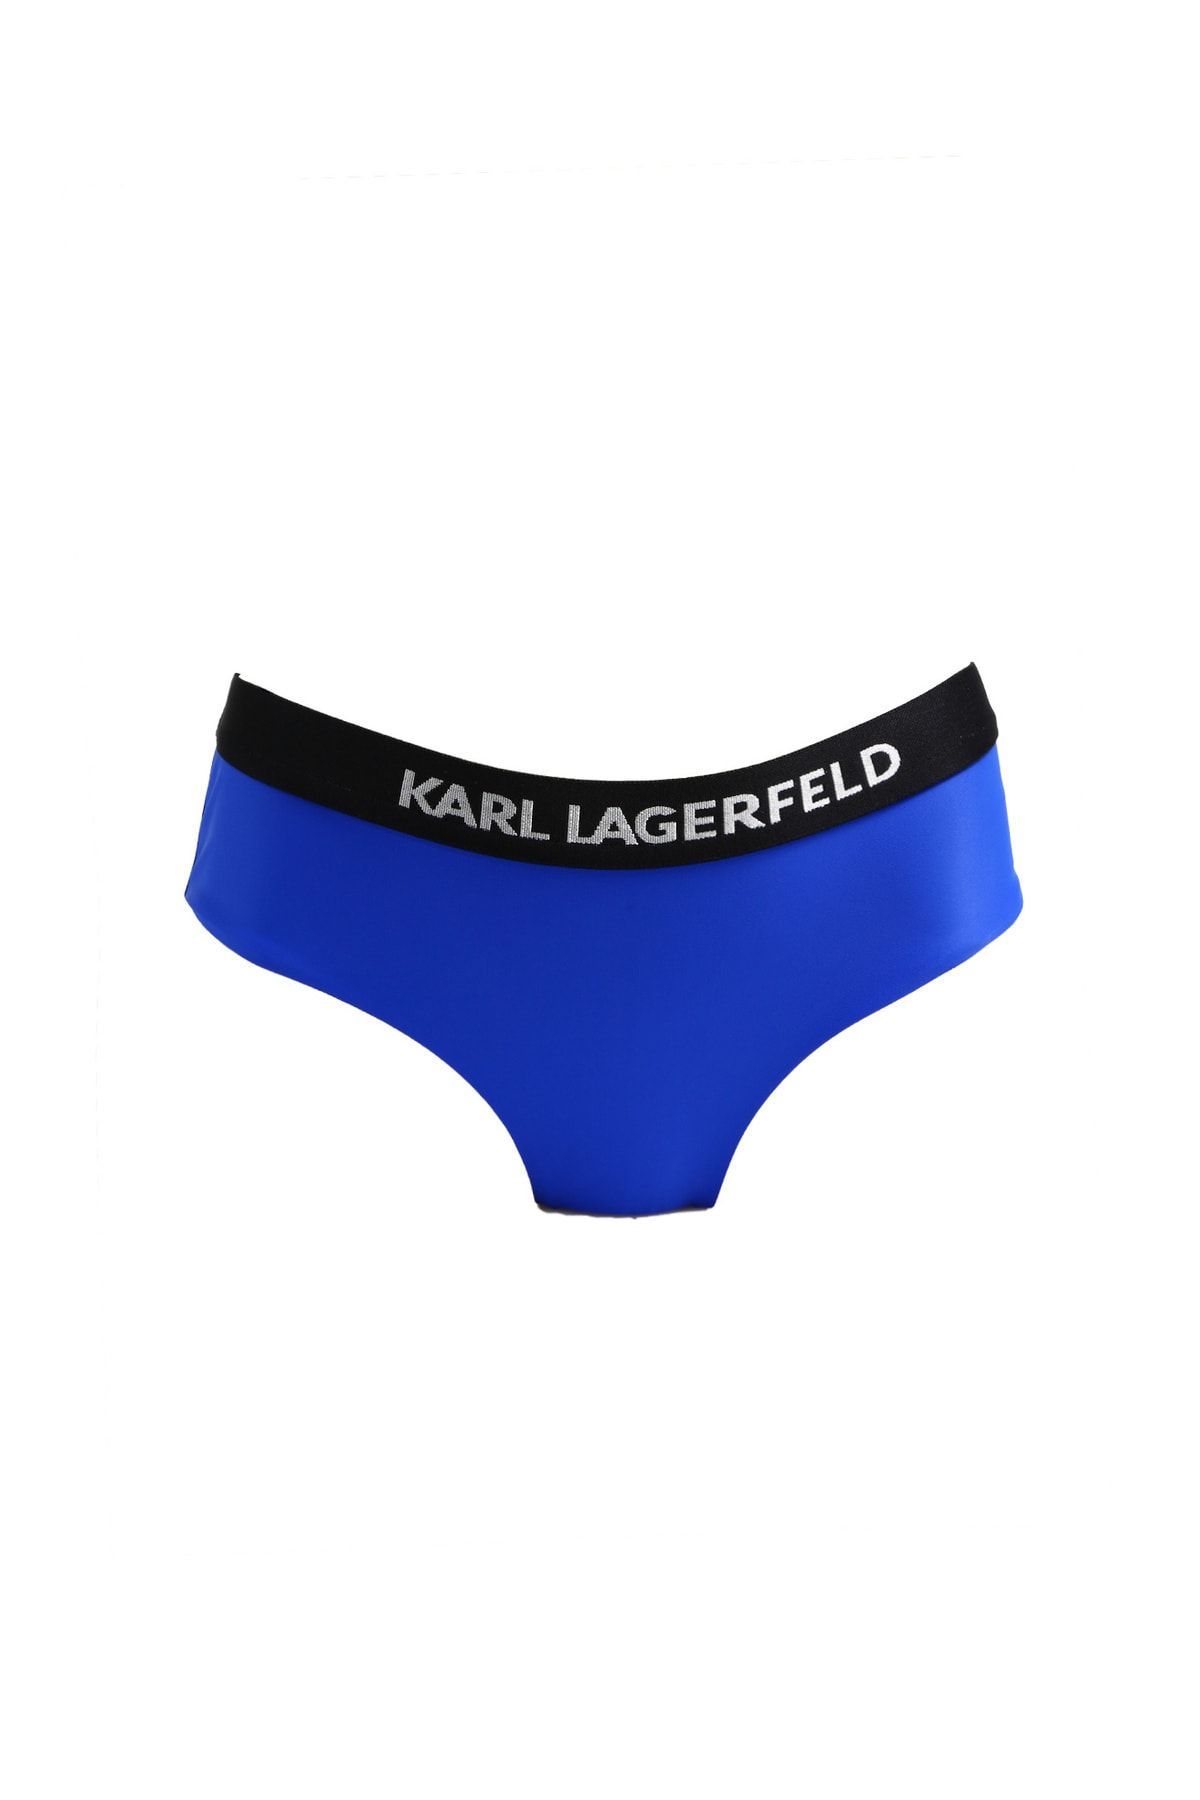 Karl Lagerfeld Lacivert Kadın Bikini Alt 230W2214